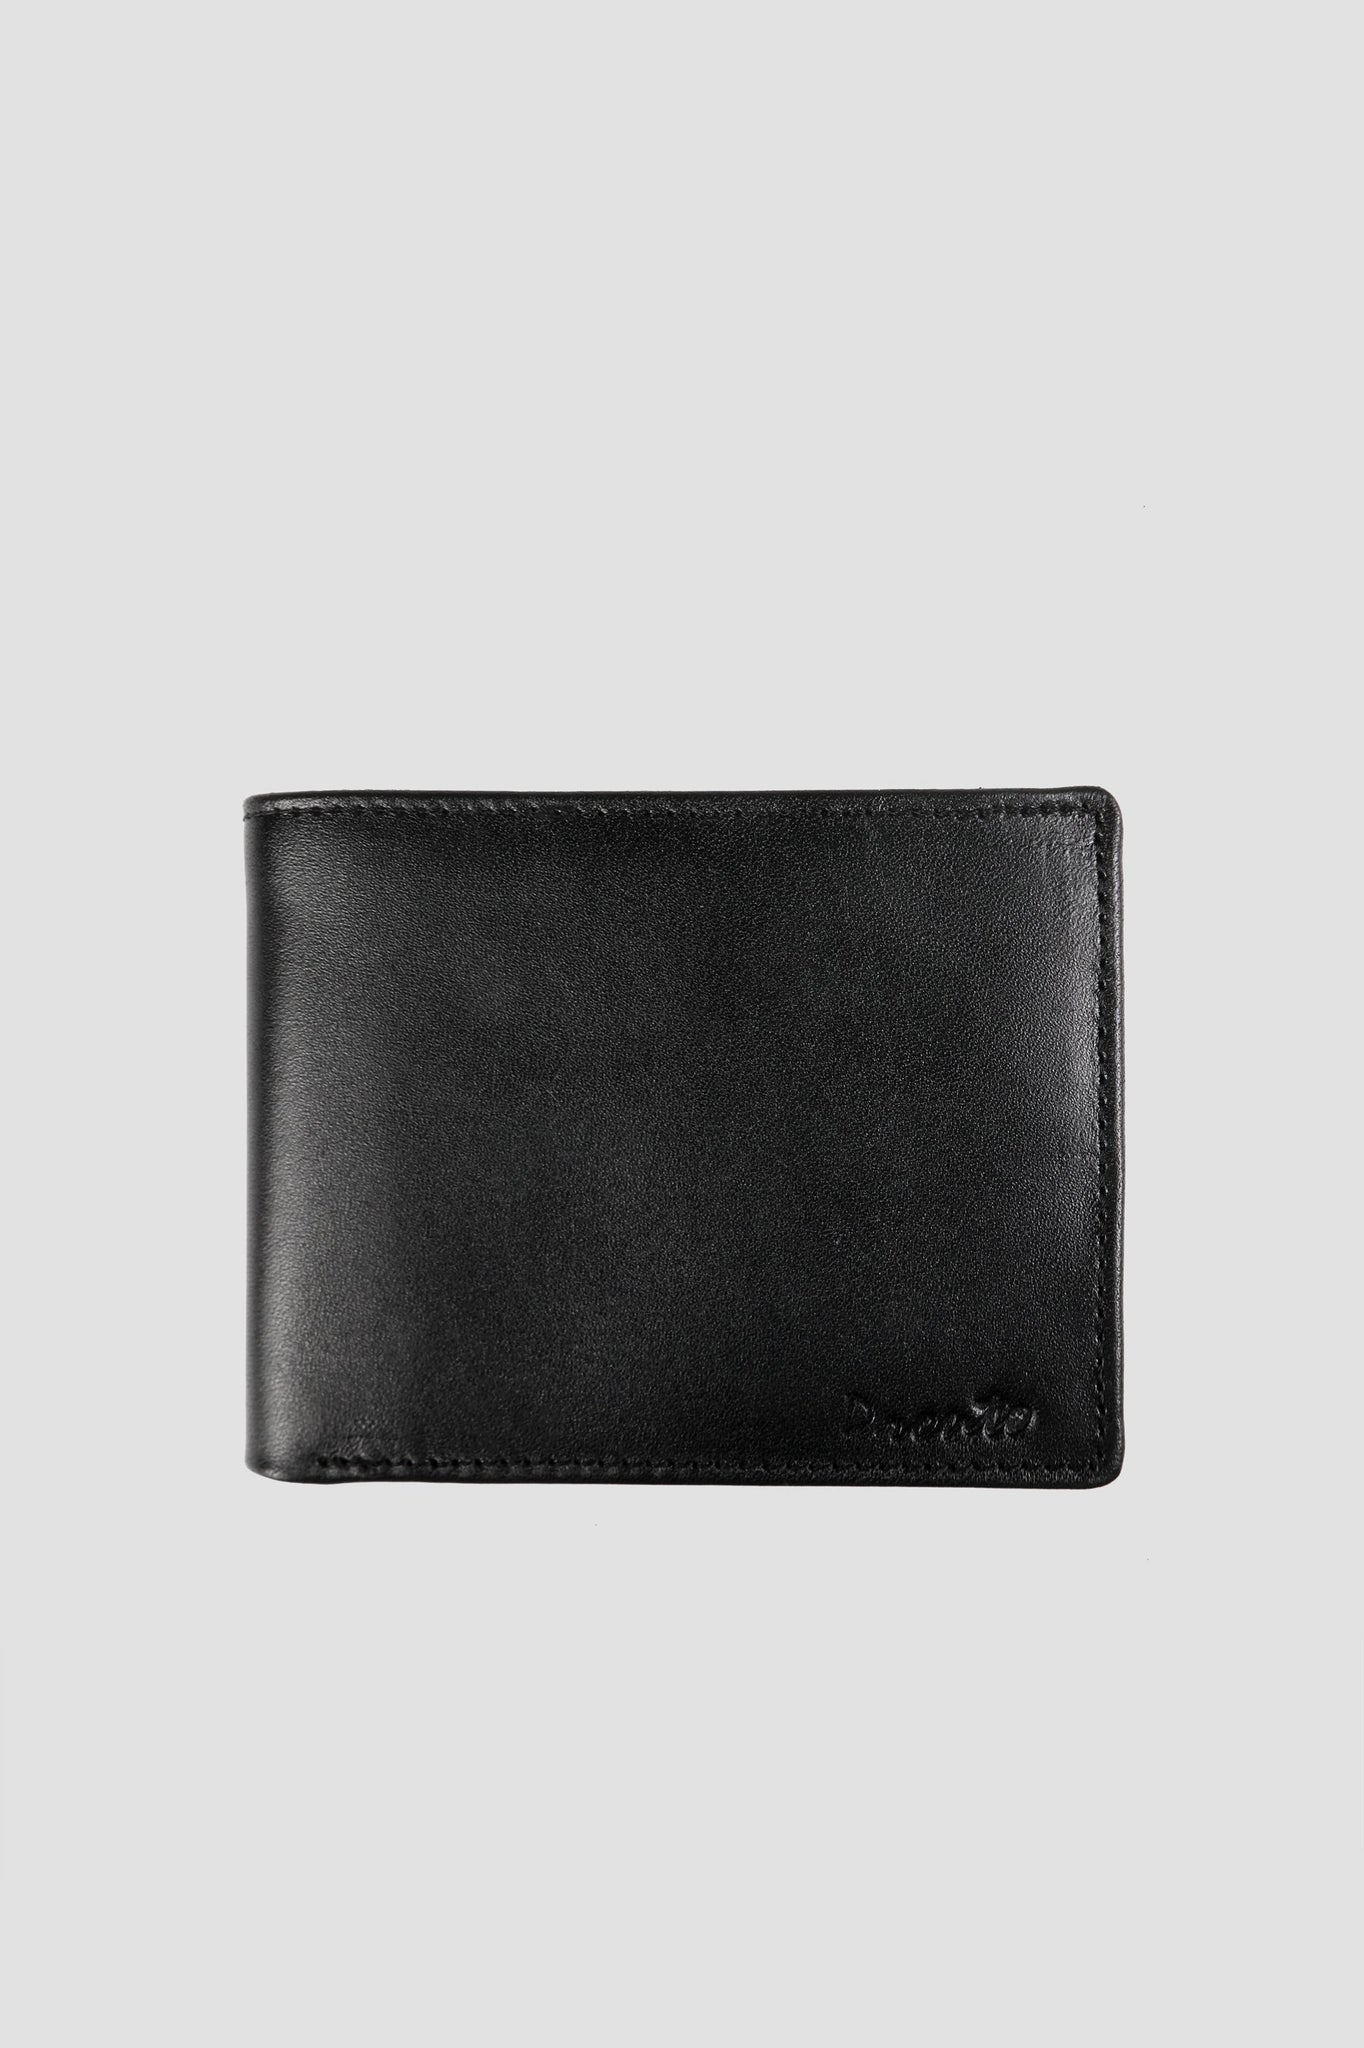 Pronto Statement Wallet